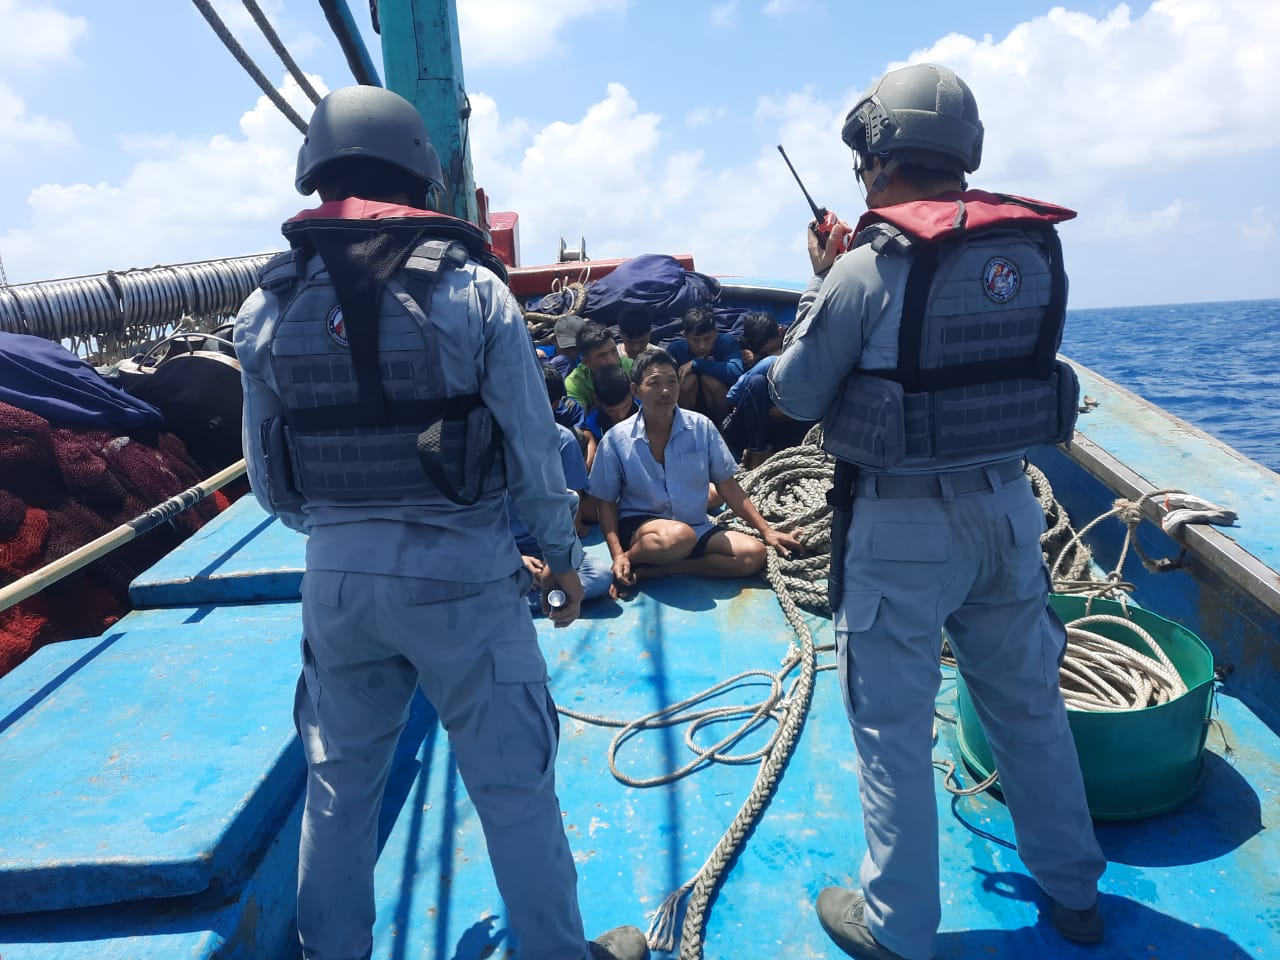 Bakamla RI Tangkap Kapal Vietnam Curi Ikan di Laut Natuna Utara